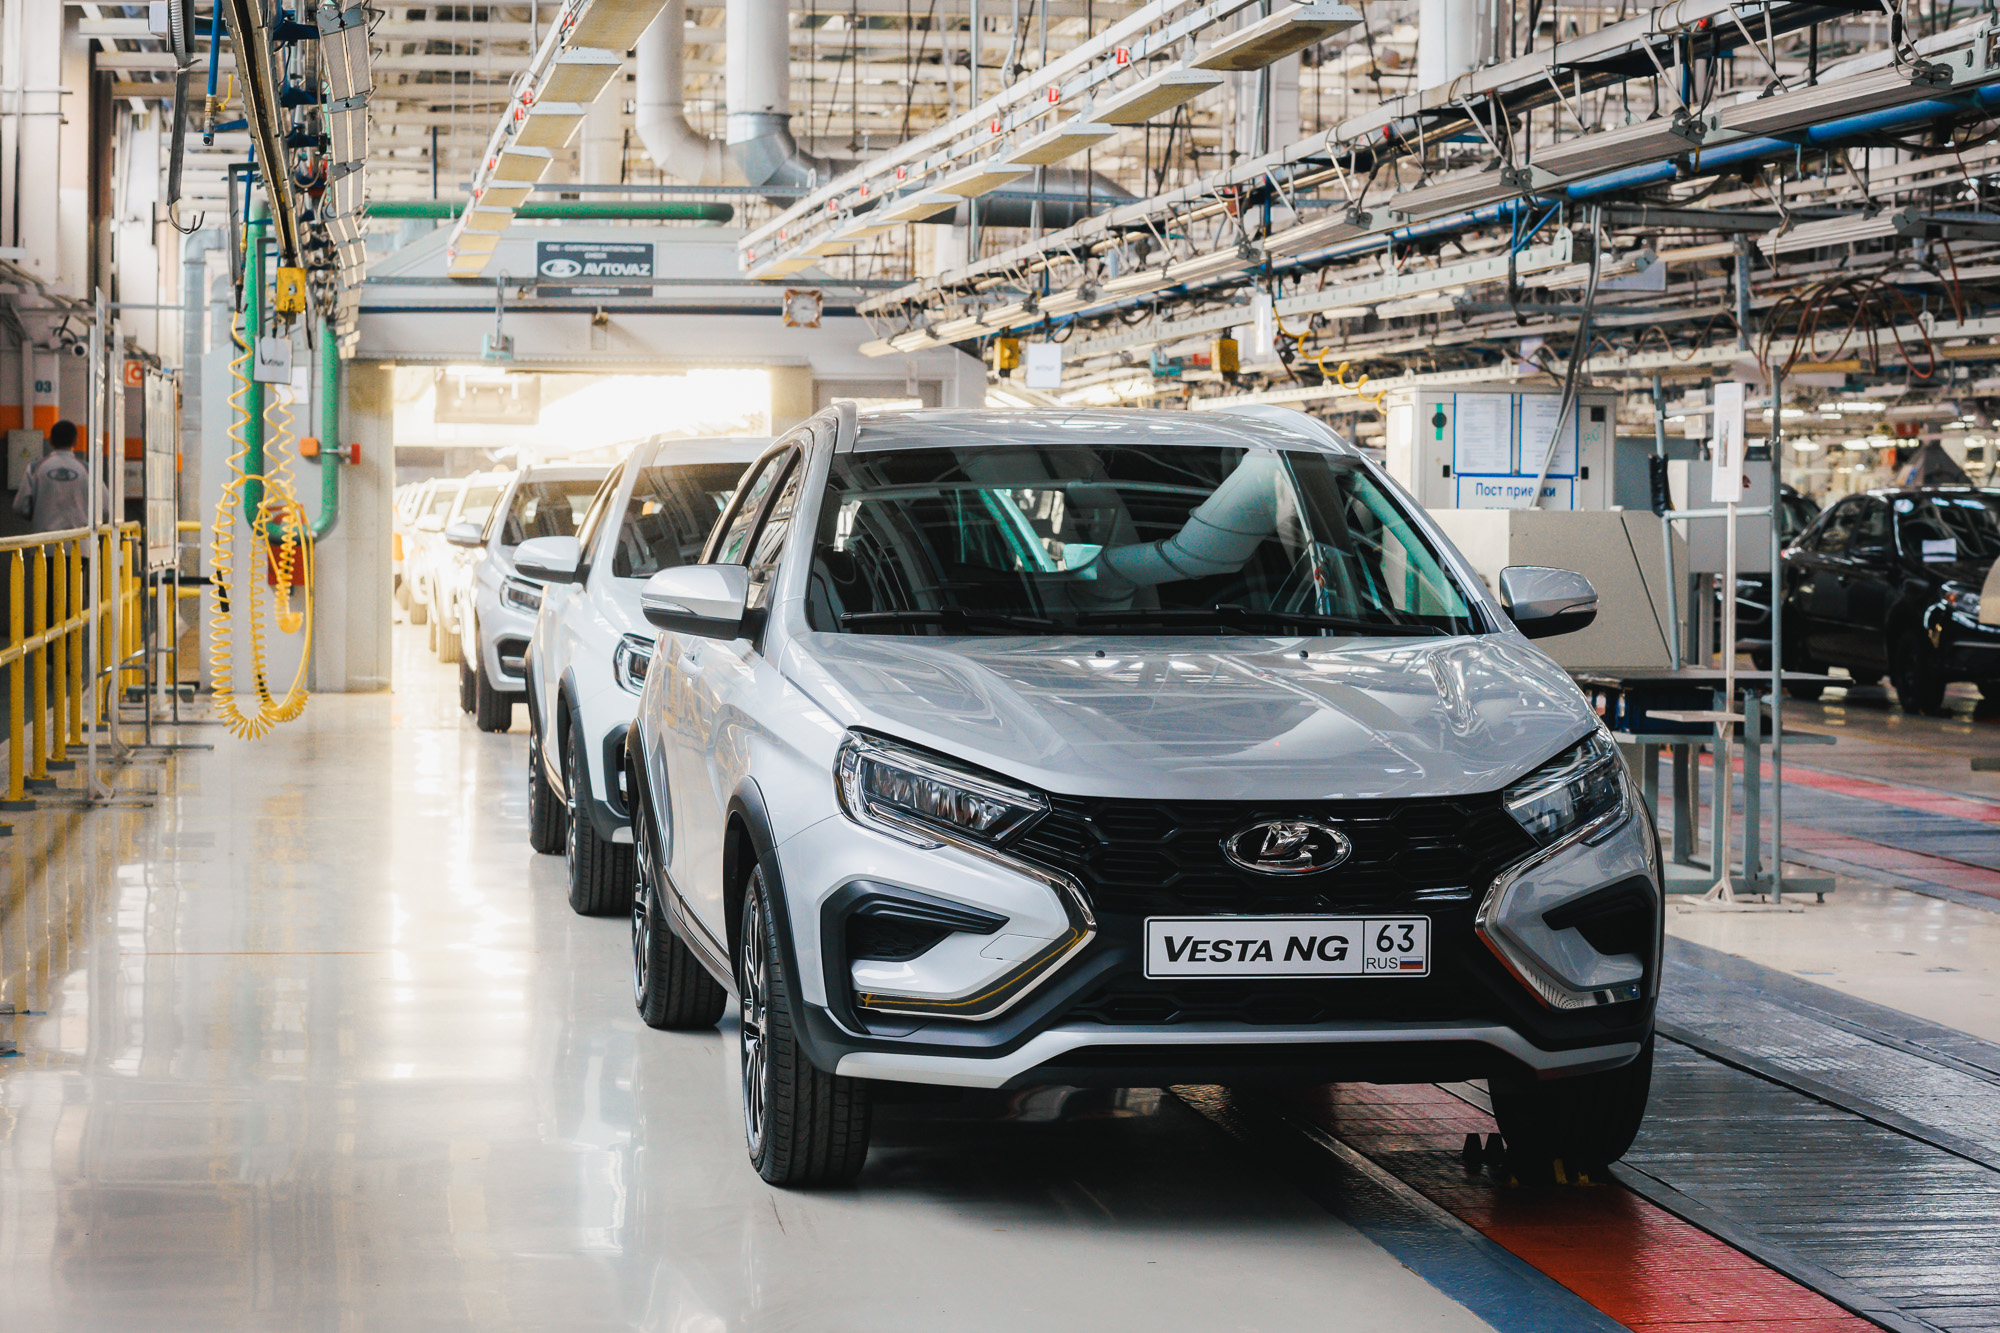 Должна была конкурировать с Hyundai и Skoda: 6 фактов о новой Lada Vestа